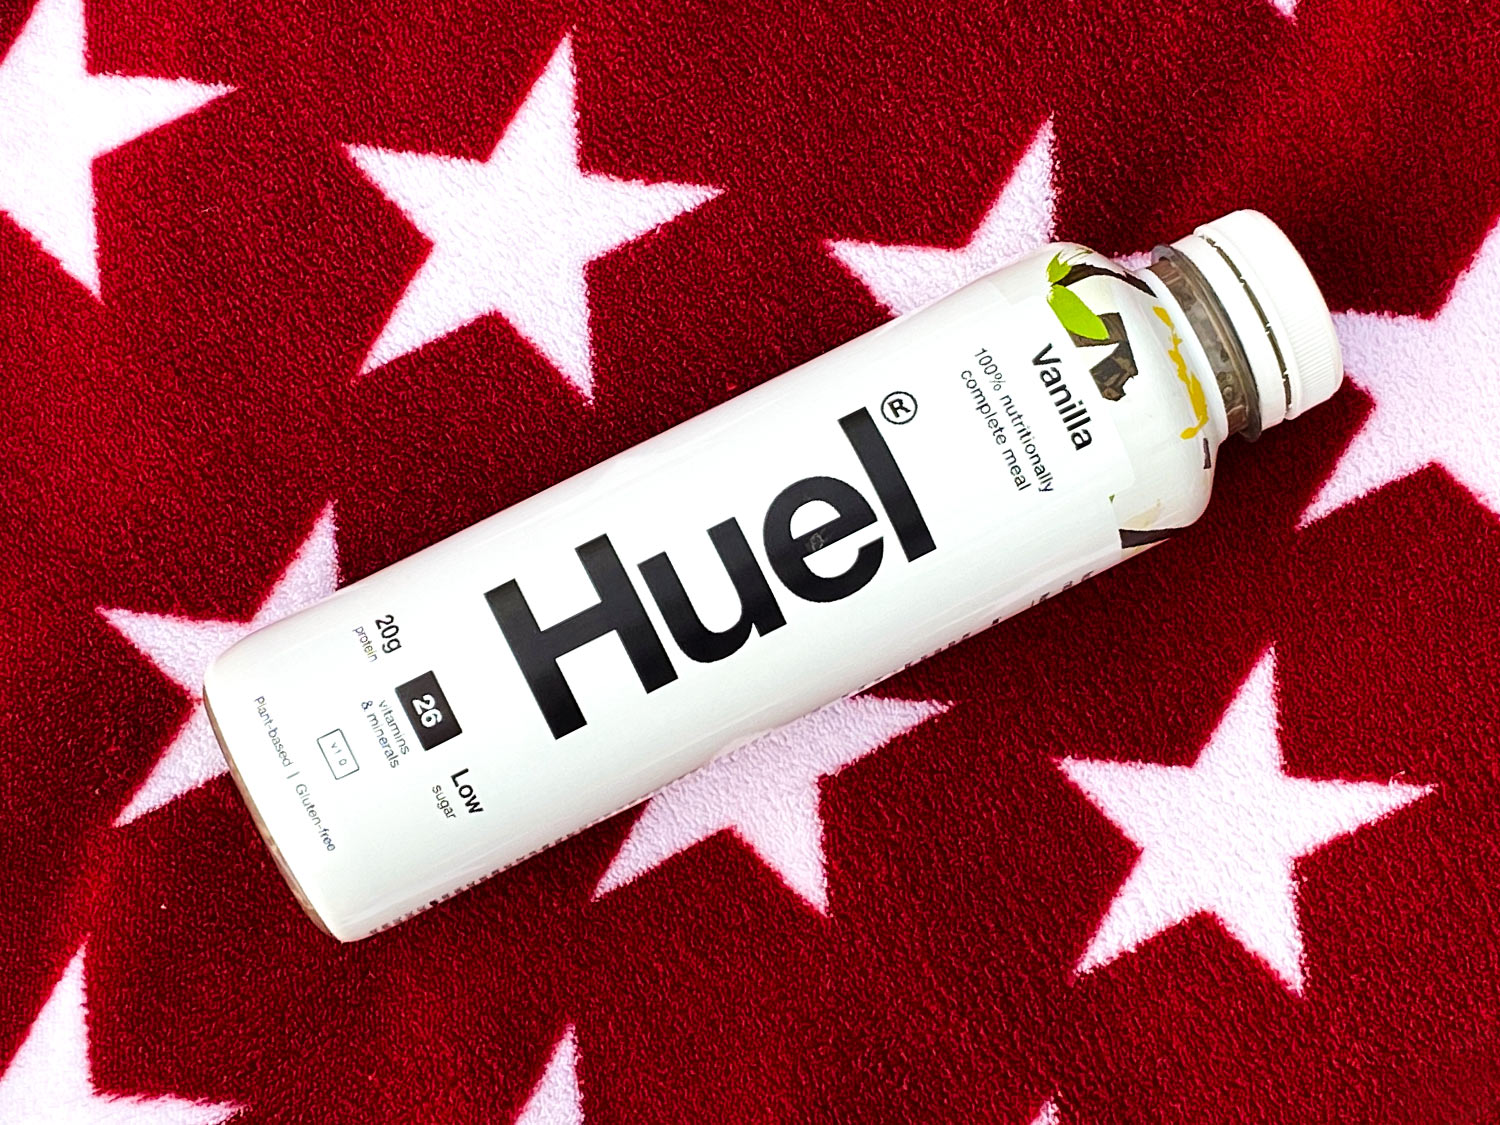 Huel Ready to Drink Vanilla Flavour Voucher Code